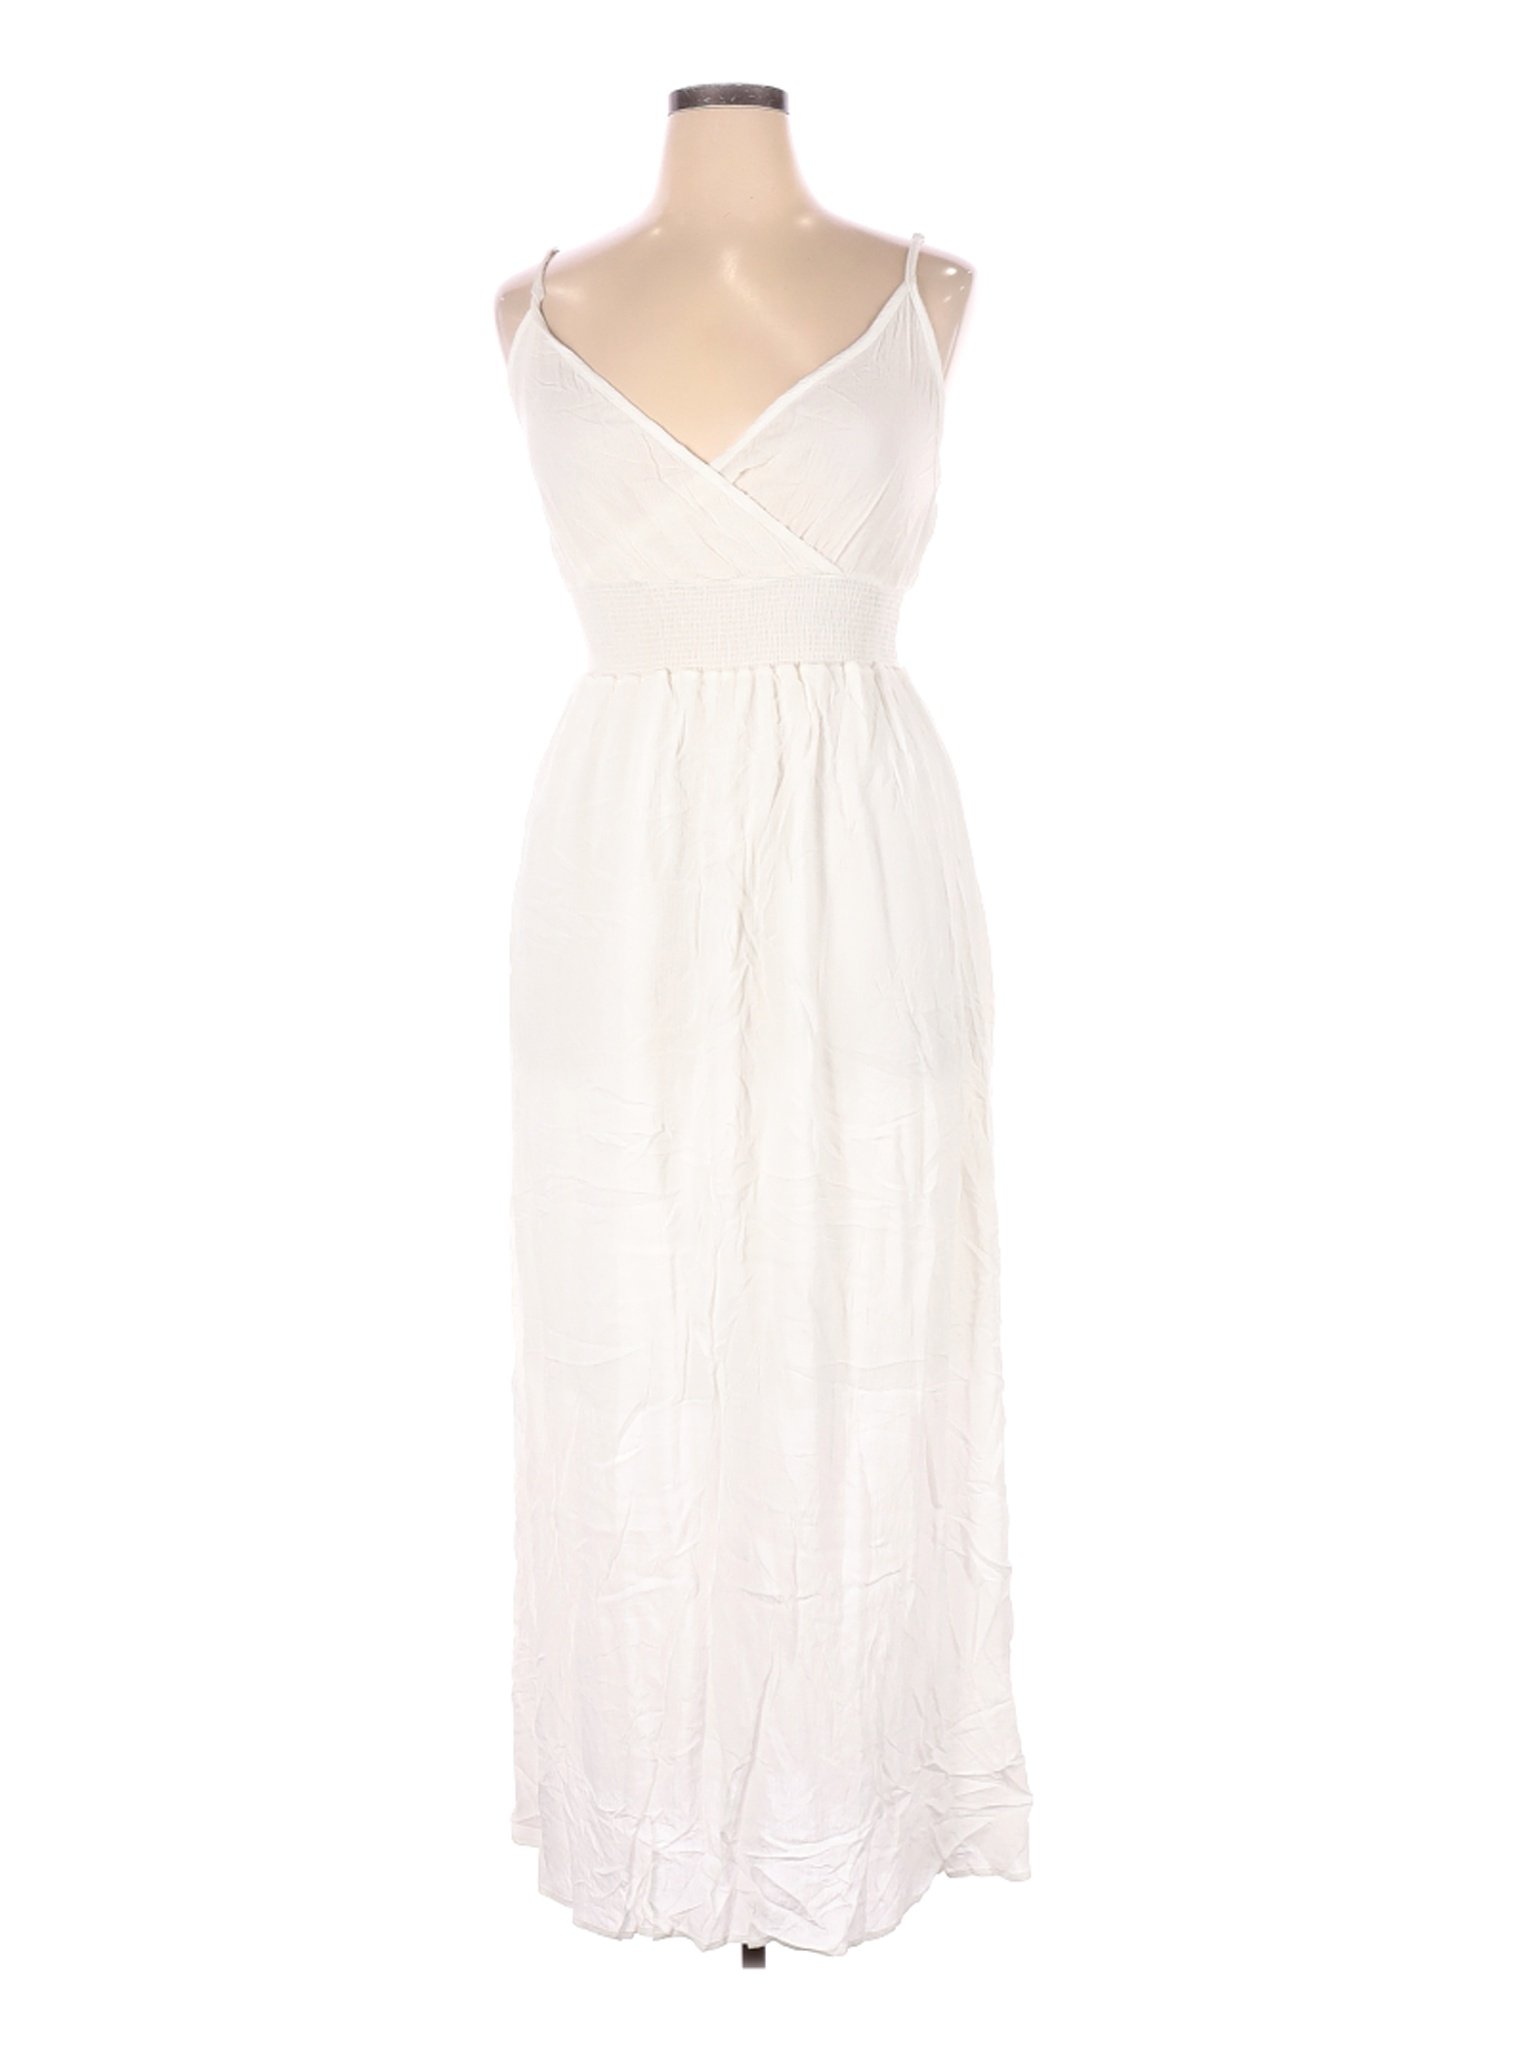 NWT West Kei Women White Casual Dress XL | eBay